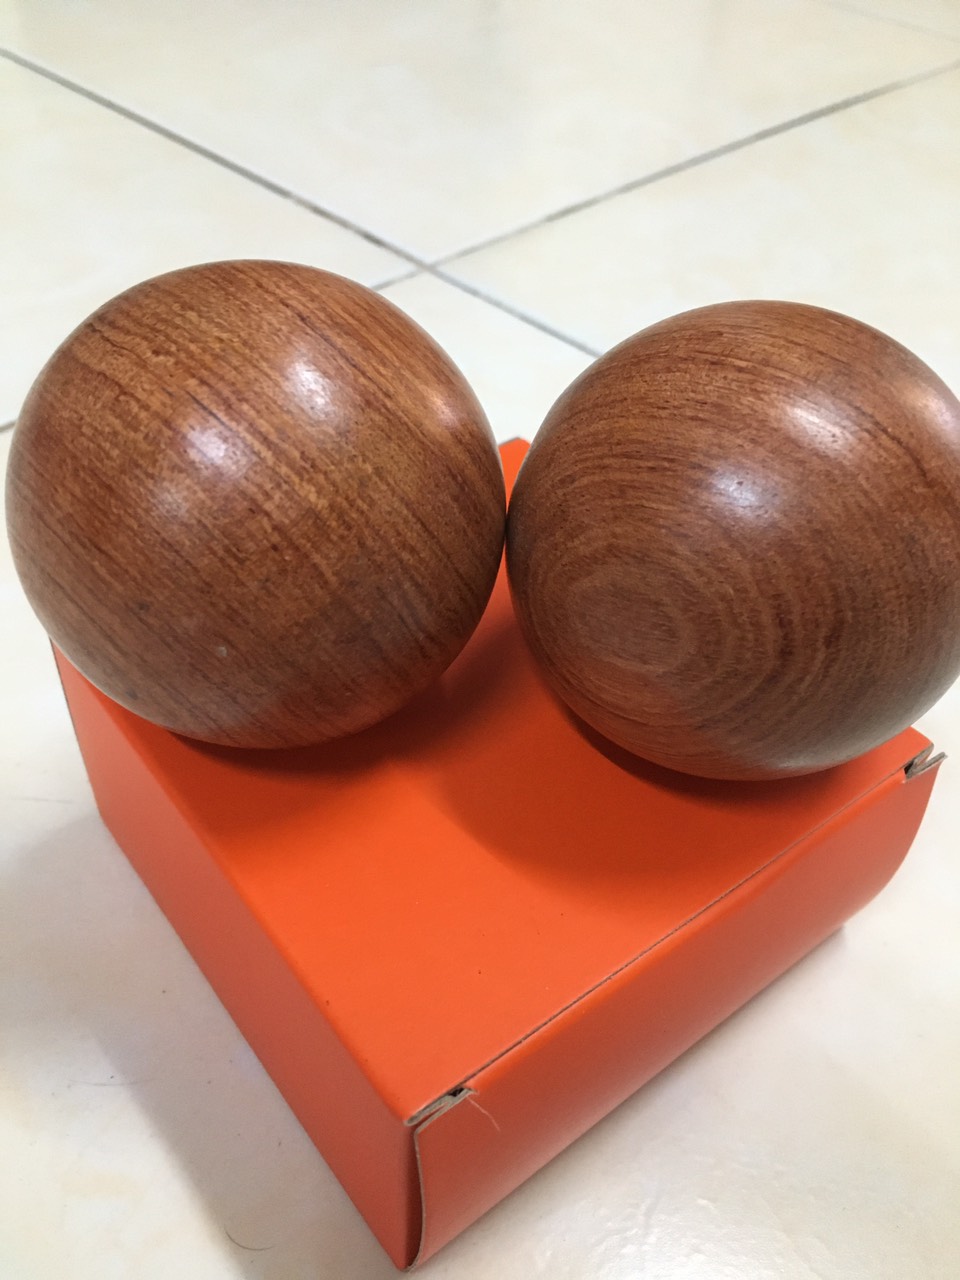 Bi lăn tay bằng gỗ Hương - Sản phẩm cho sức khoẻ  - 5 cm ( hình thật )